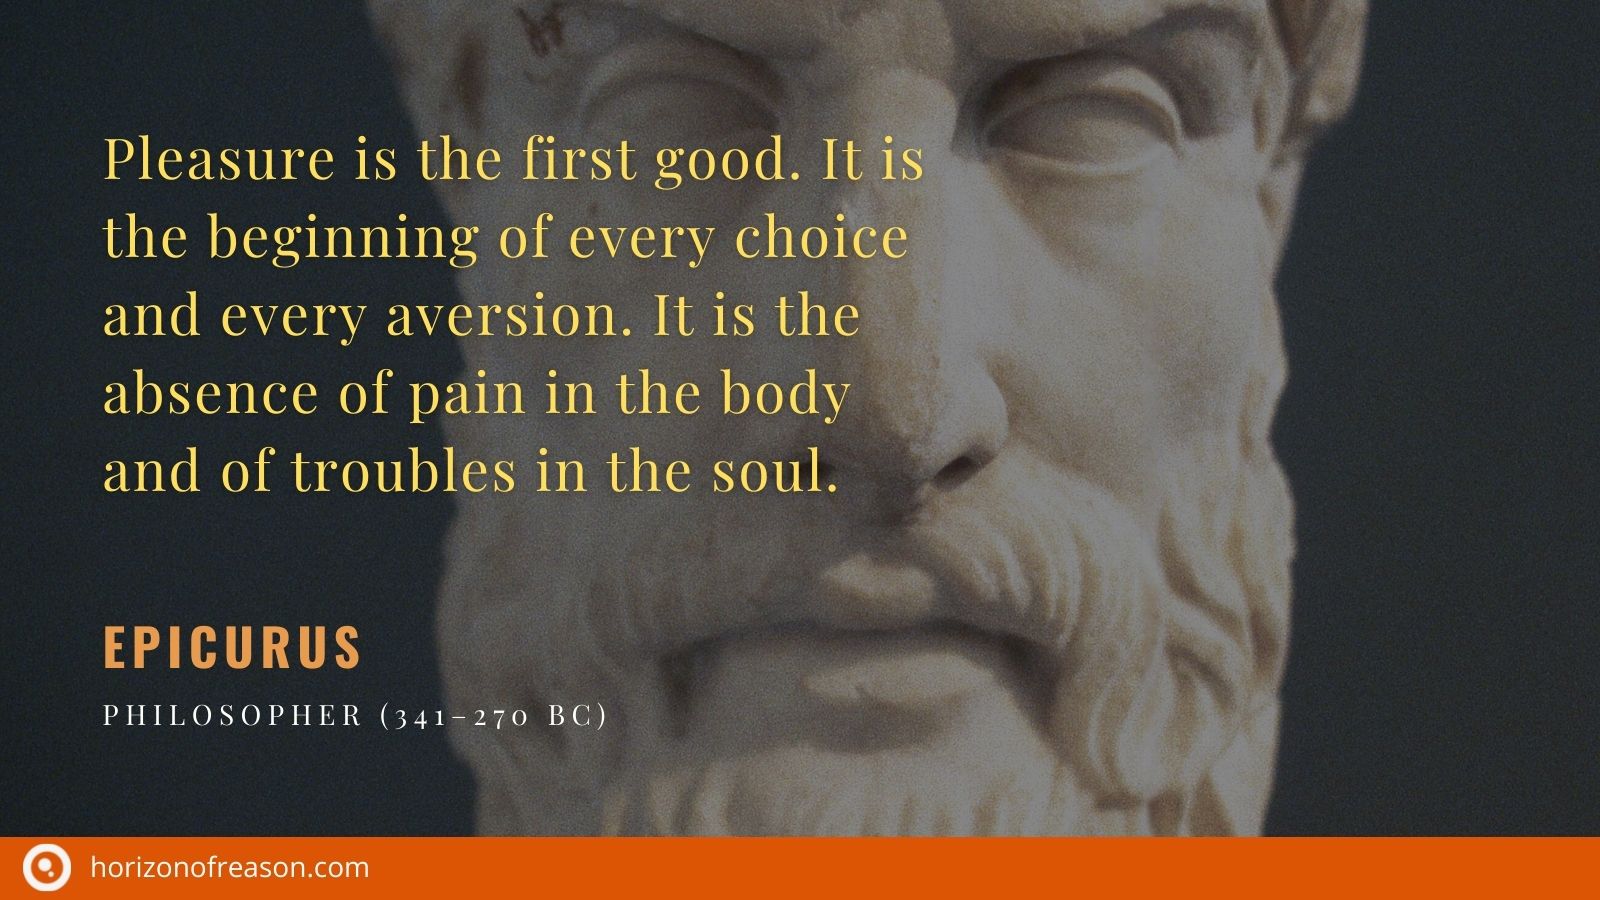 Epicurus on pleasure